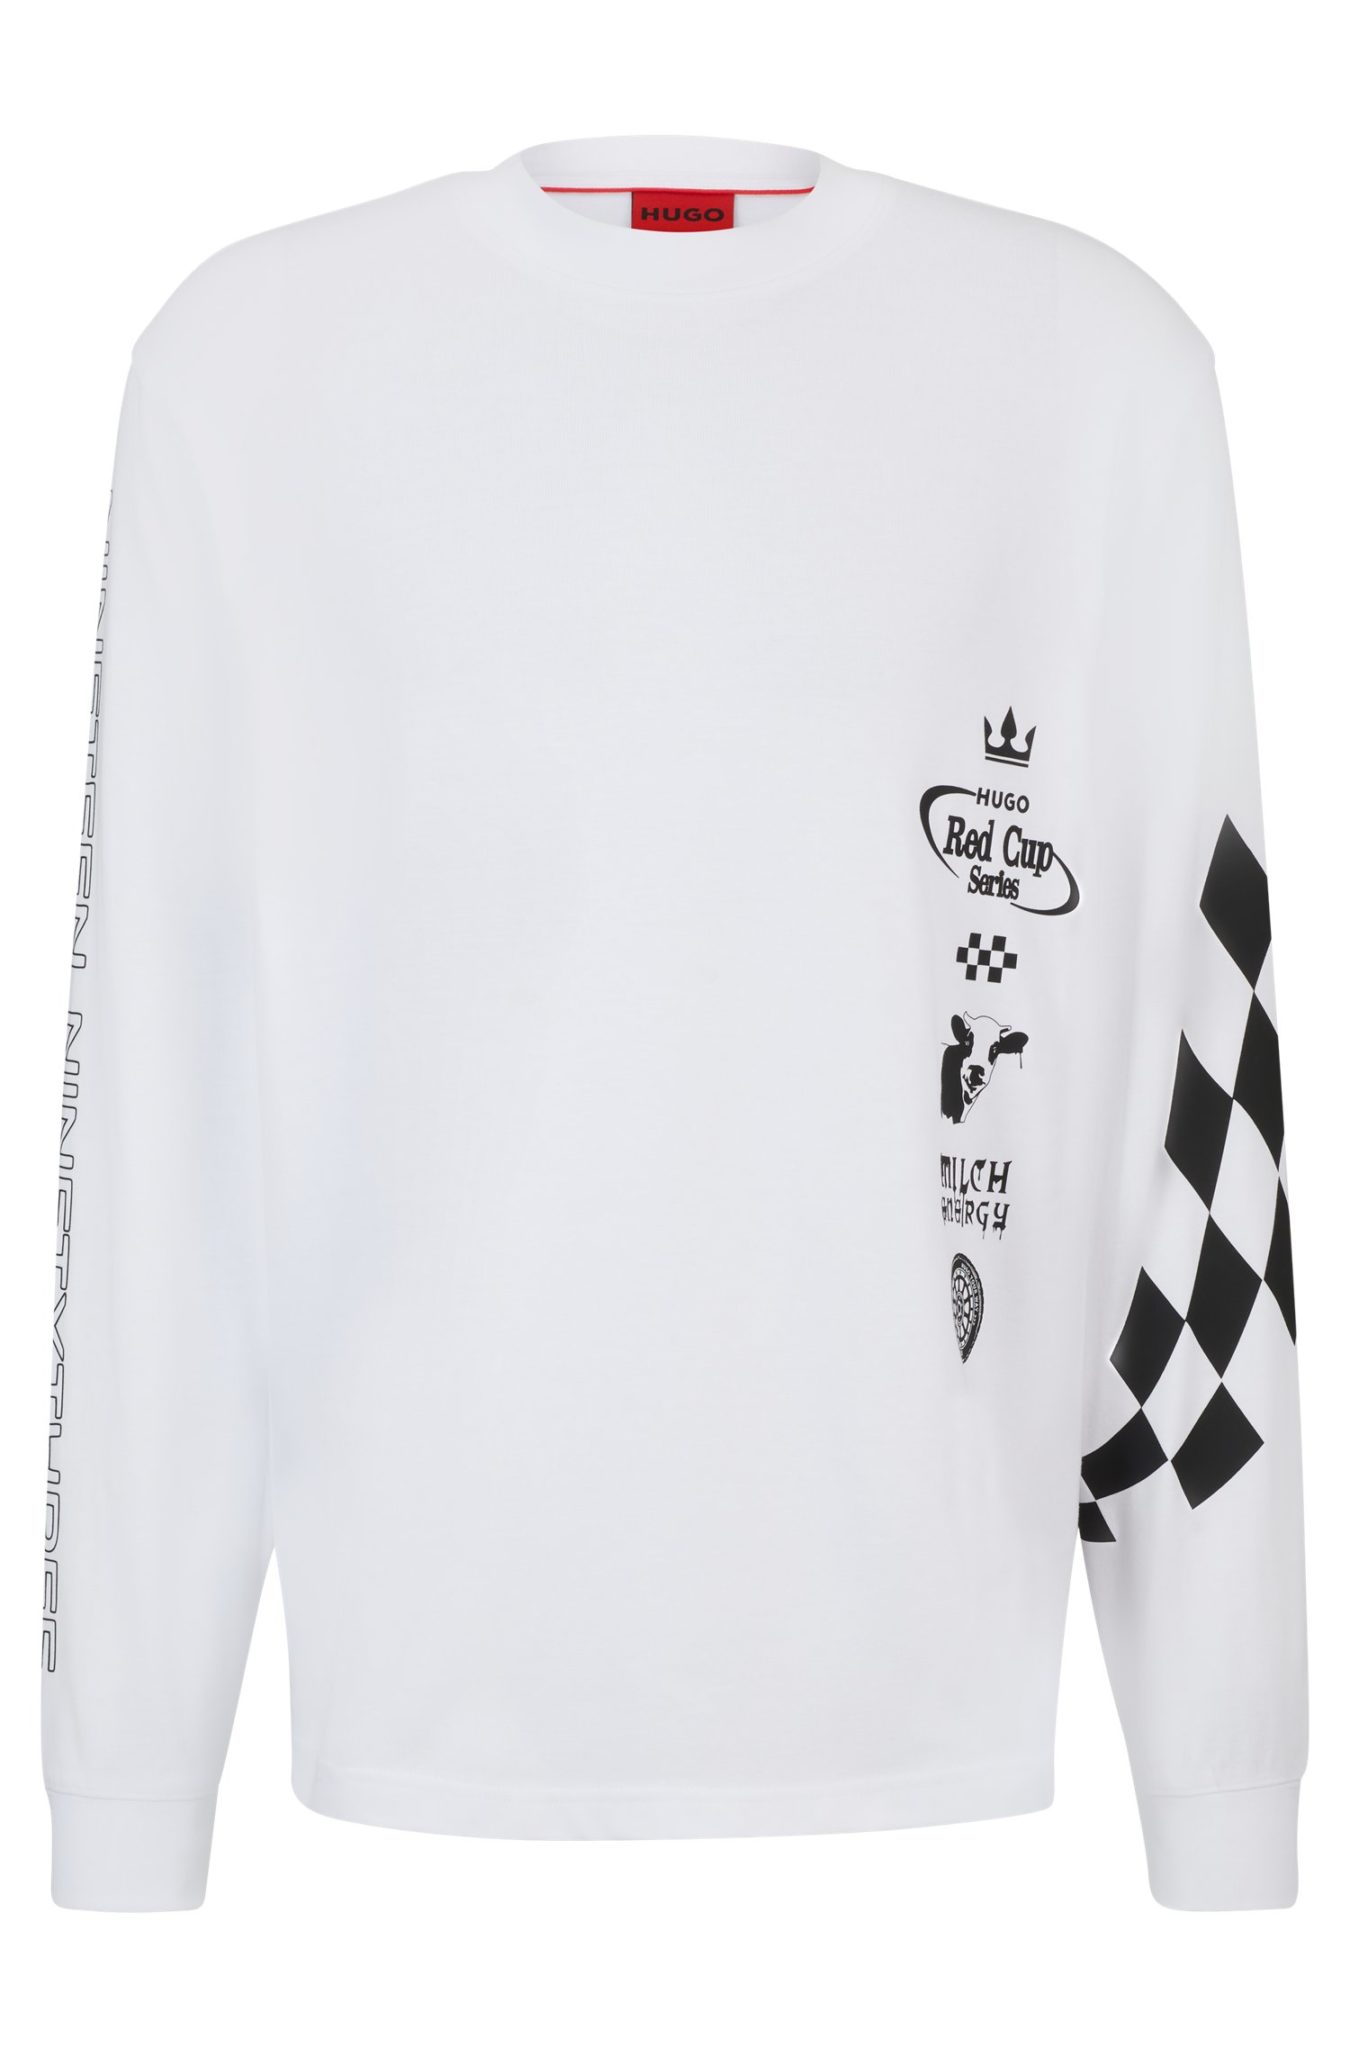 Hugo Boss T-shirt en jersey de coton avec imprimés inspirés de l’univers de la course automobile